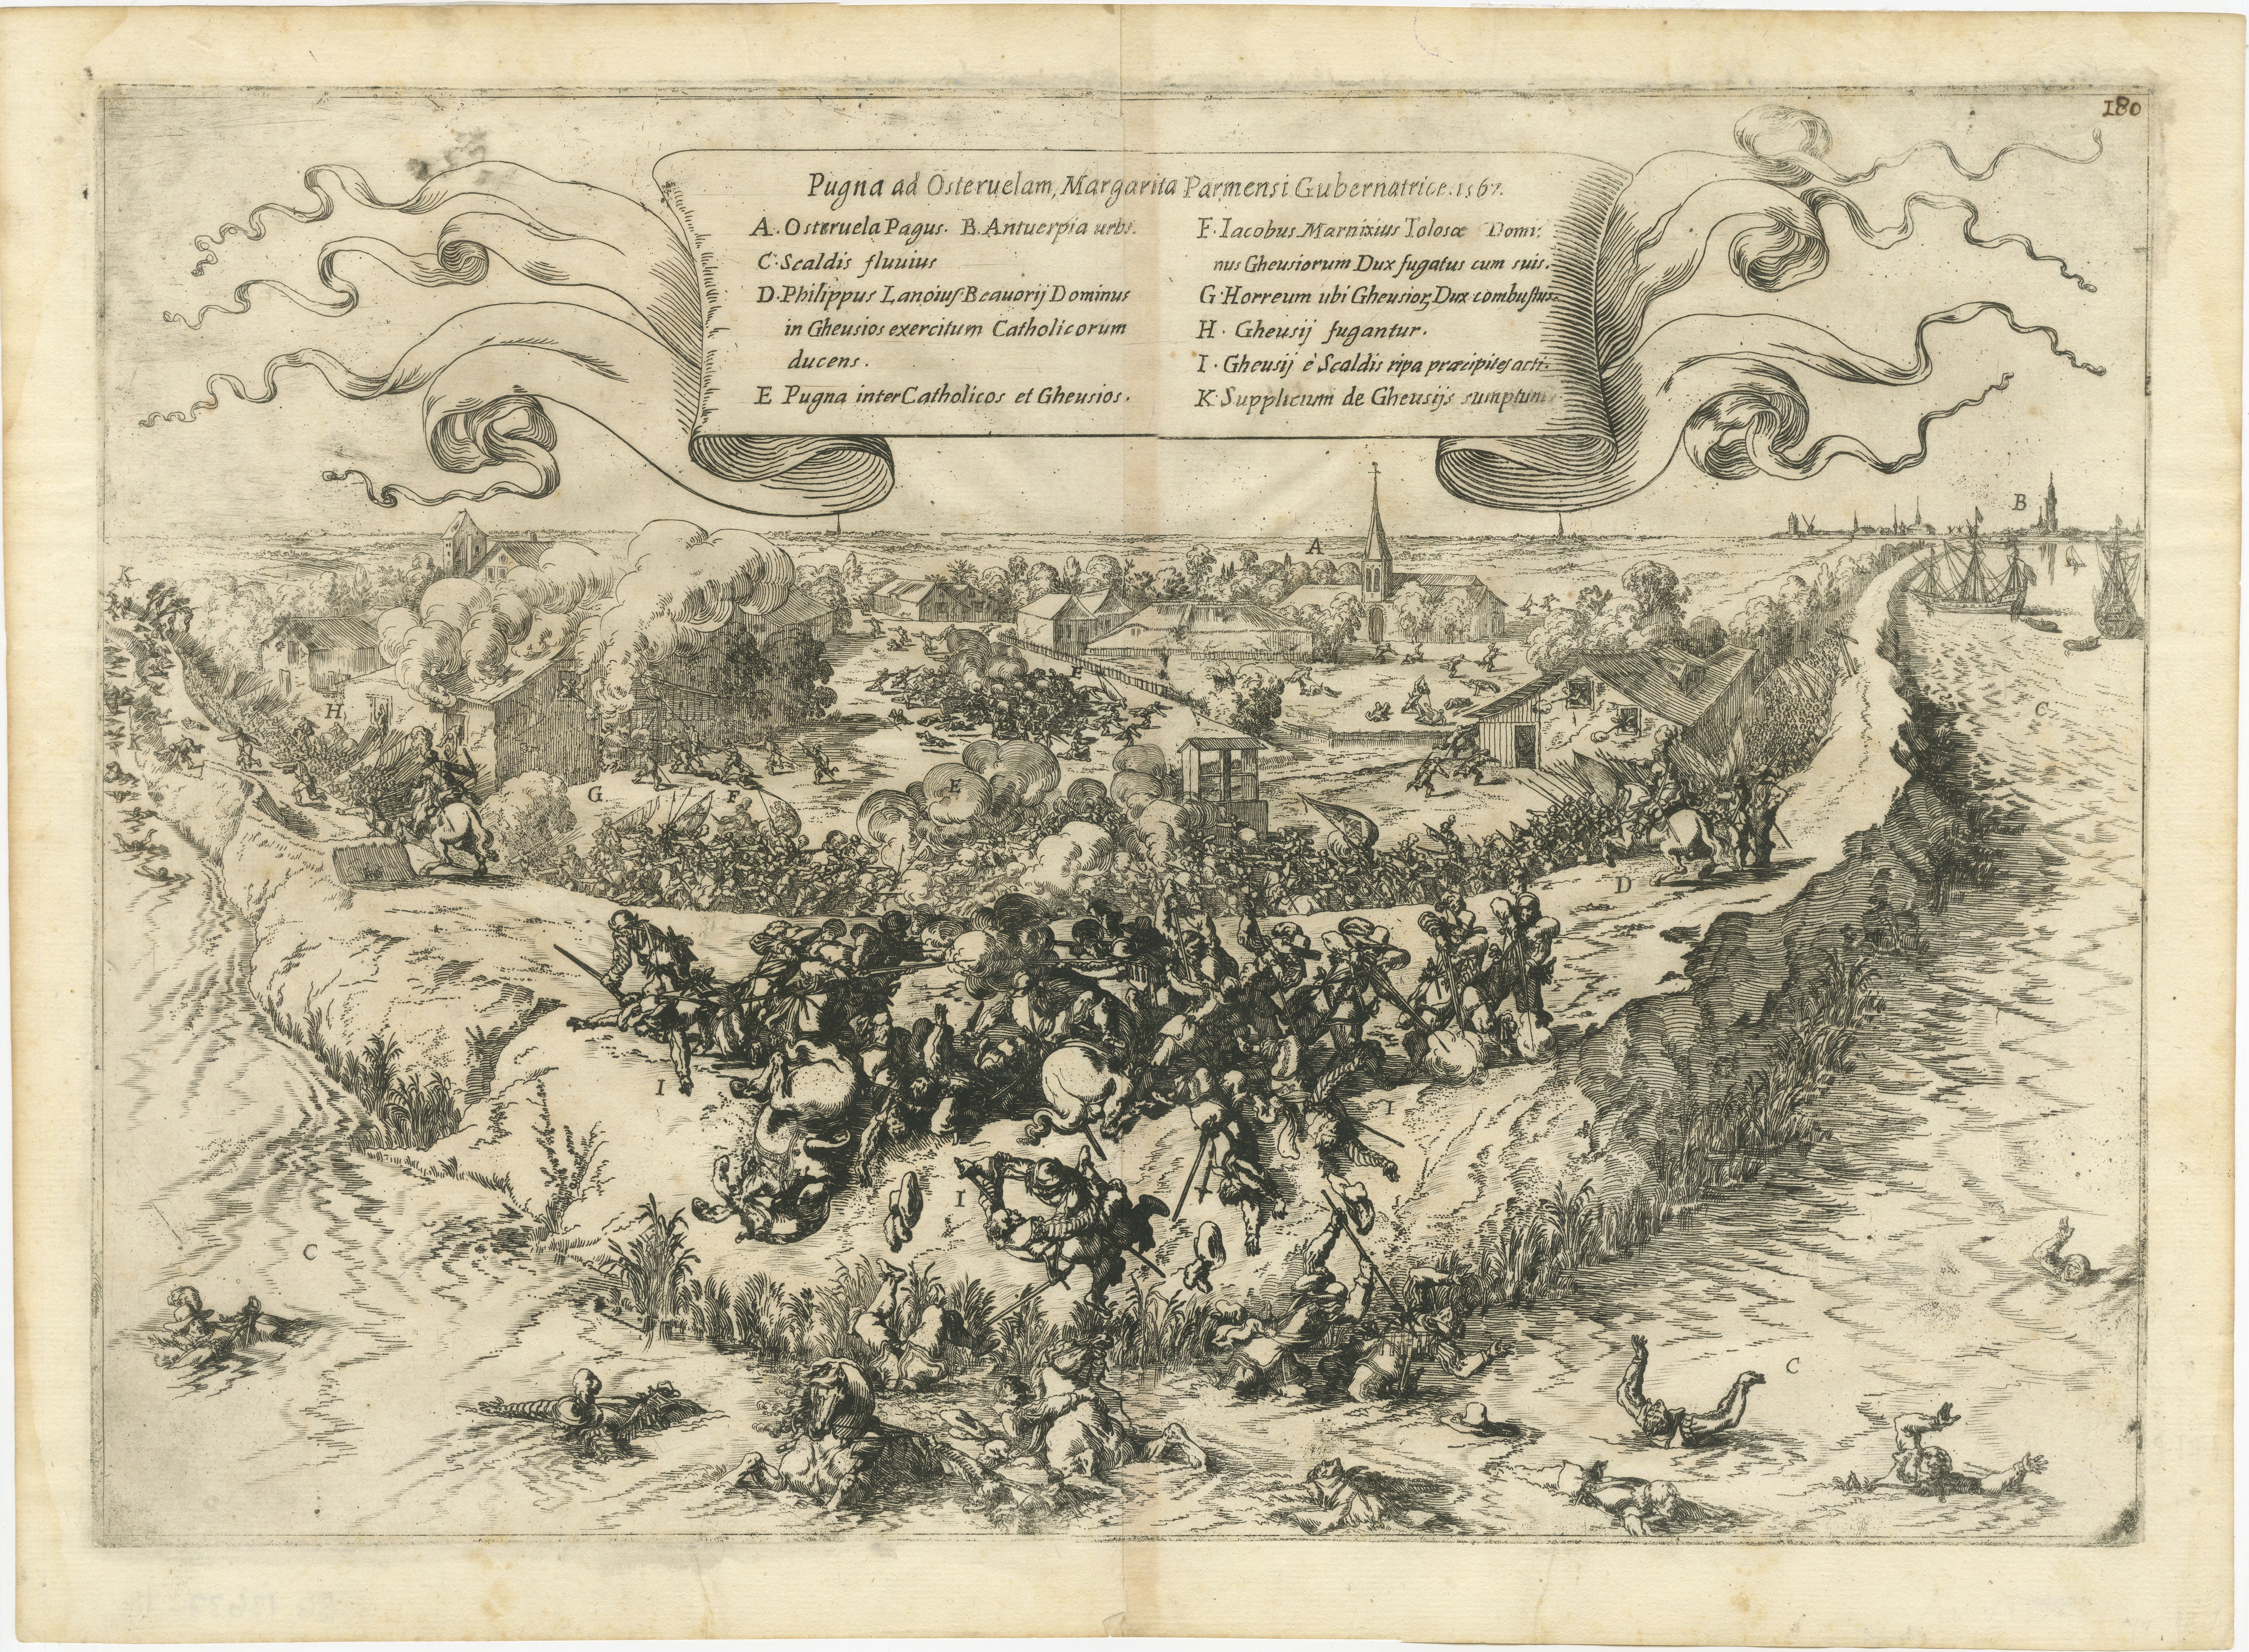 Ein antiker Originalstich der Schlacht von Oosterweel, die 1567 während des niederländischen Aufstandes stattfand. Es handelt sich um einen frühen Konflikt im Vorfeld des Achtzigjährigen Krieges. Die Schlacht war eine bedeutende Niederlage für die